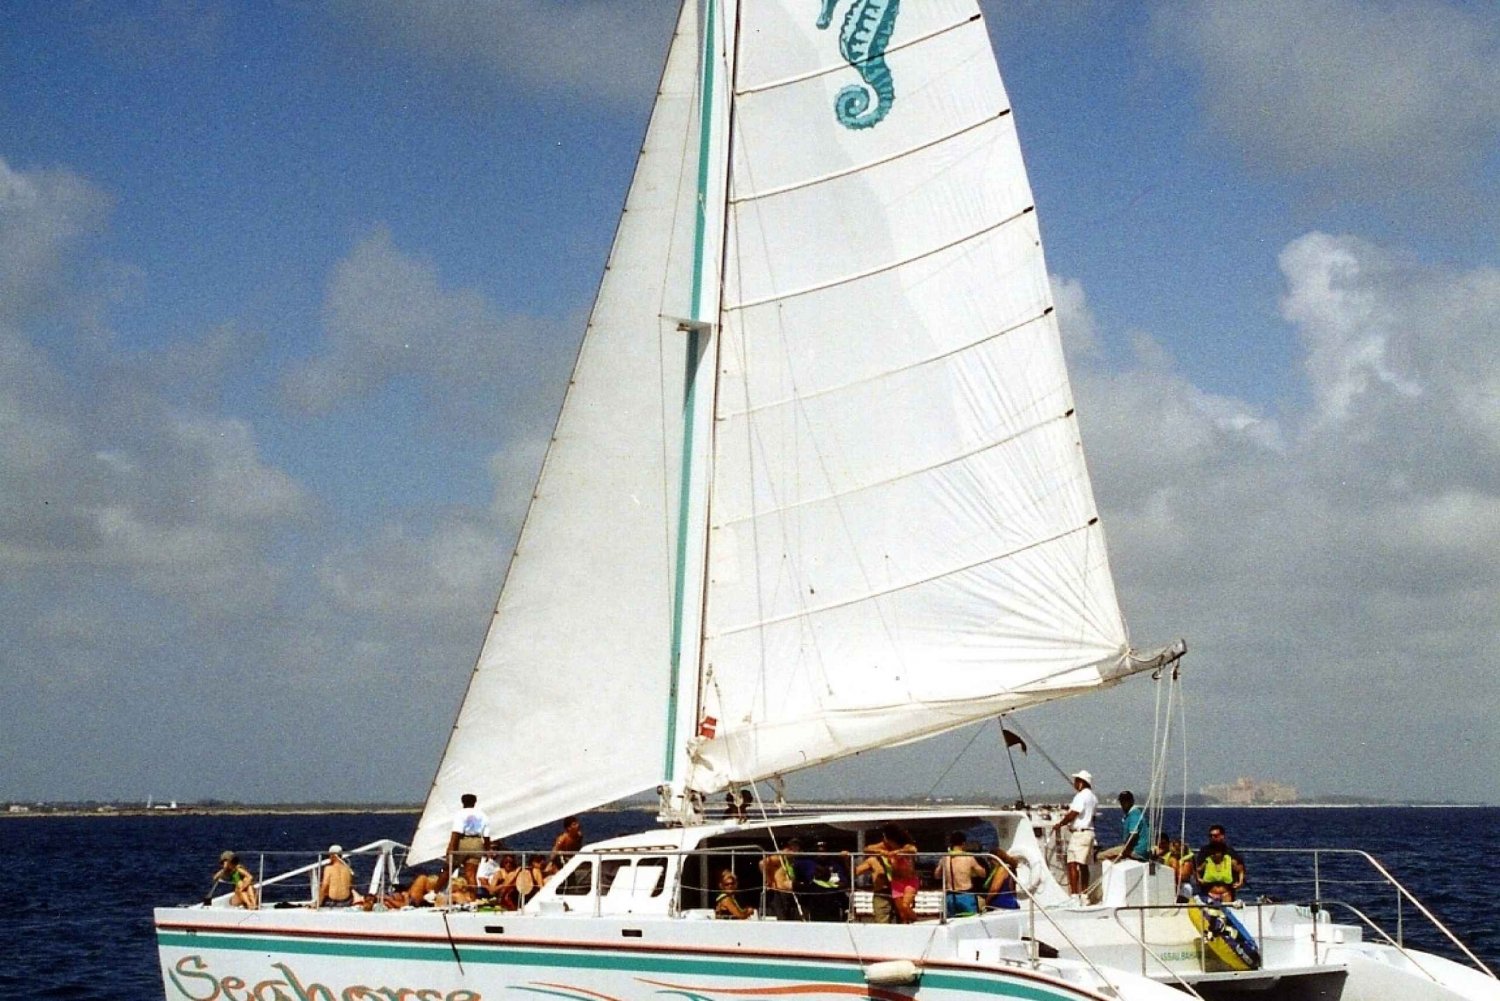 nassau catamaran sail and snorkel